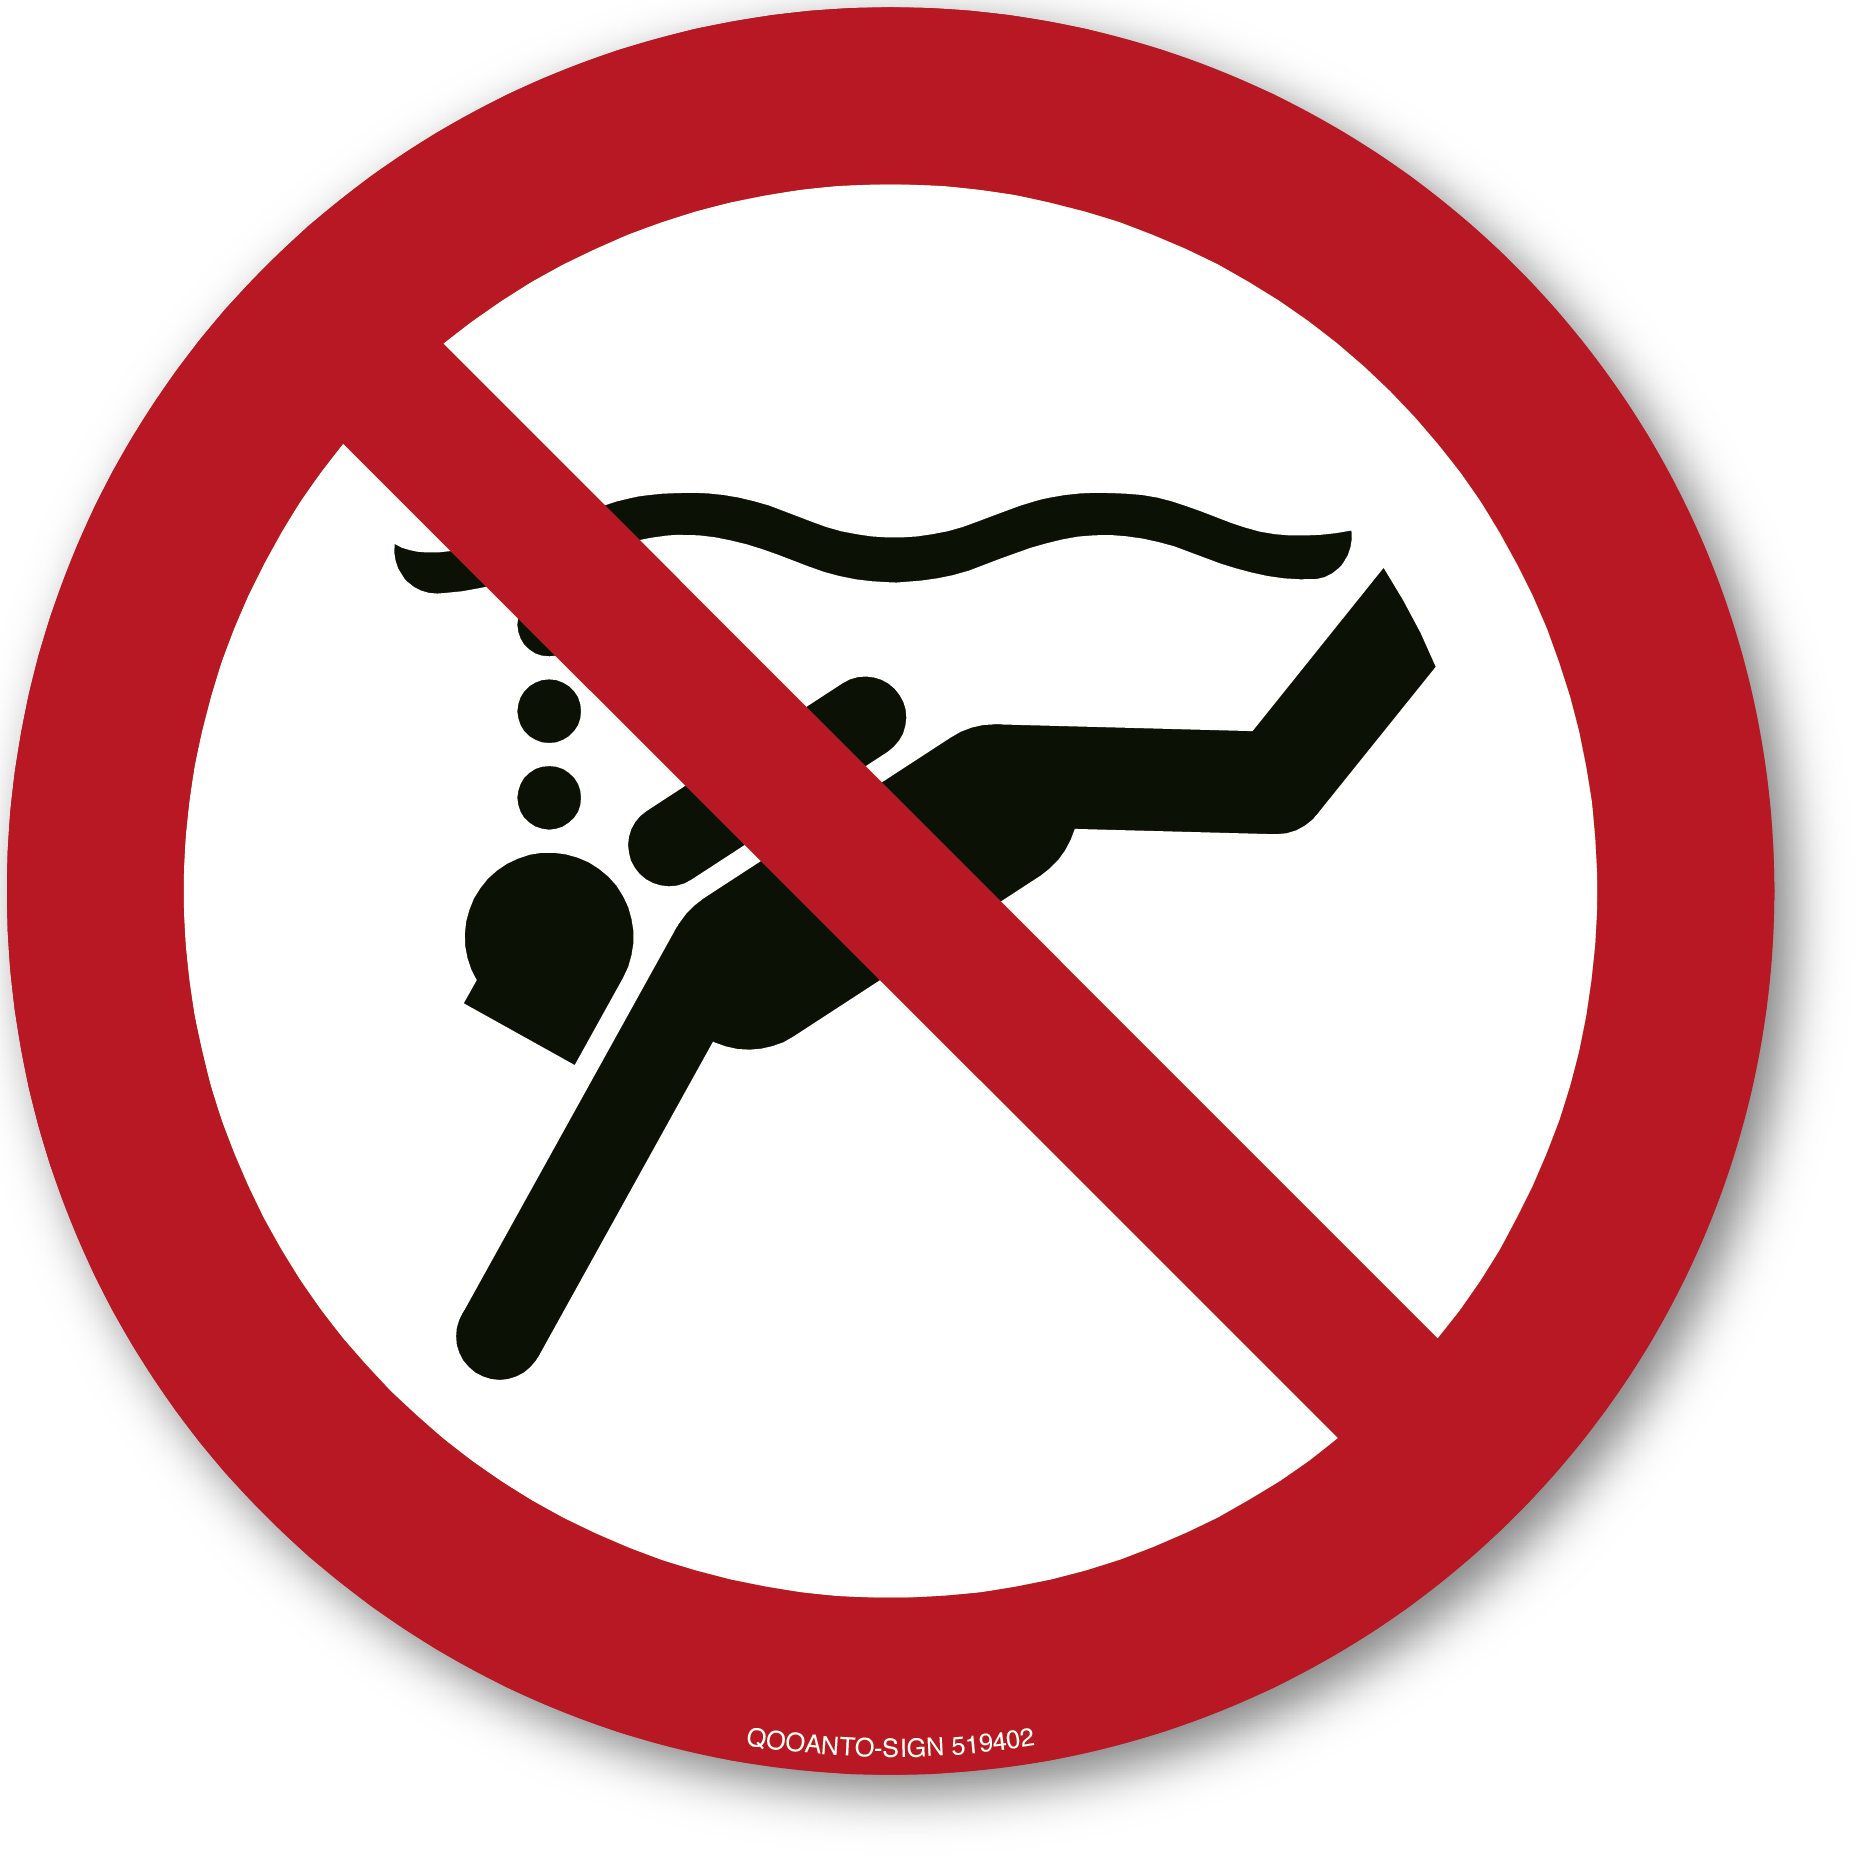 Geräte-Tauchen verboten, Schild oder Aufkleber